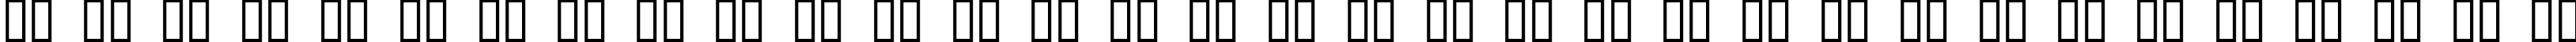 Пример написания русского алфавита шрифтом Acadian Cyr